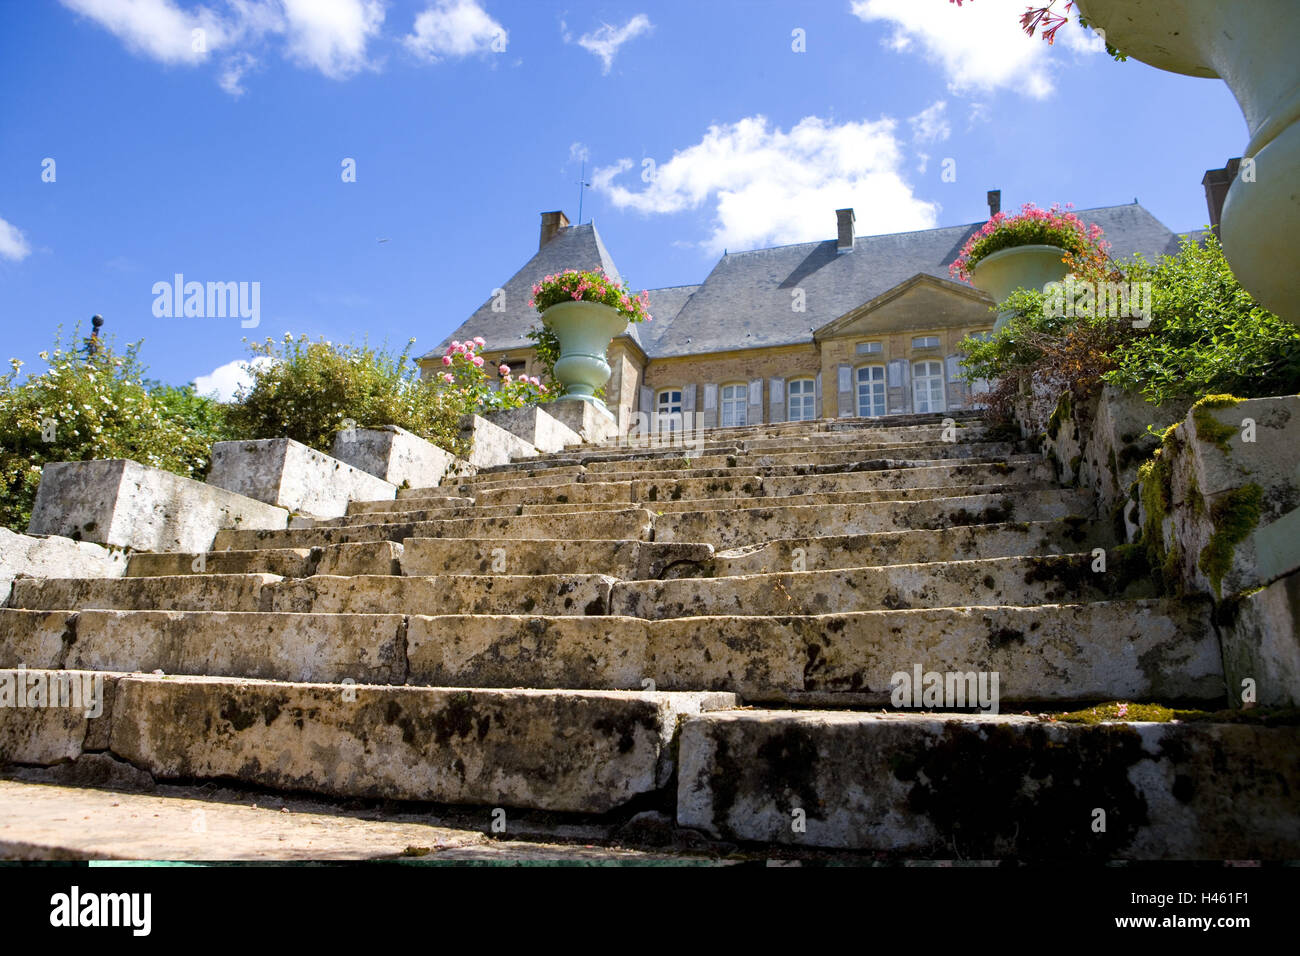 France, Bourgogne, Saone-et-Loire, Charolles, La Clayette, Corbigny, Chateau de Dree, steps, flowers, Stock Photo